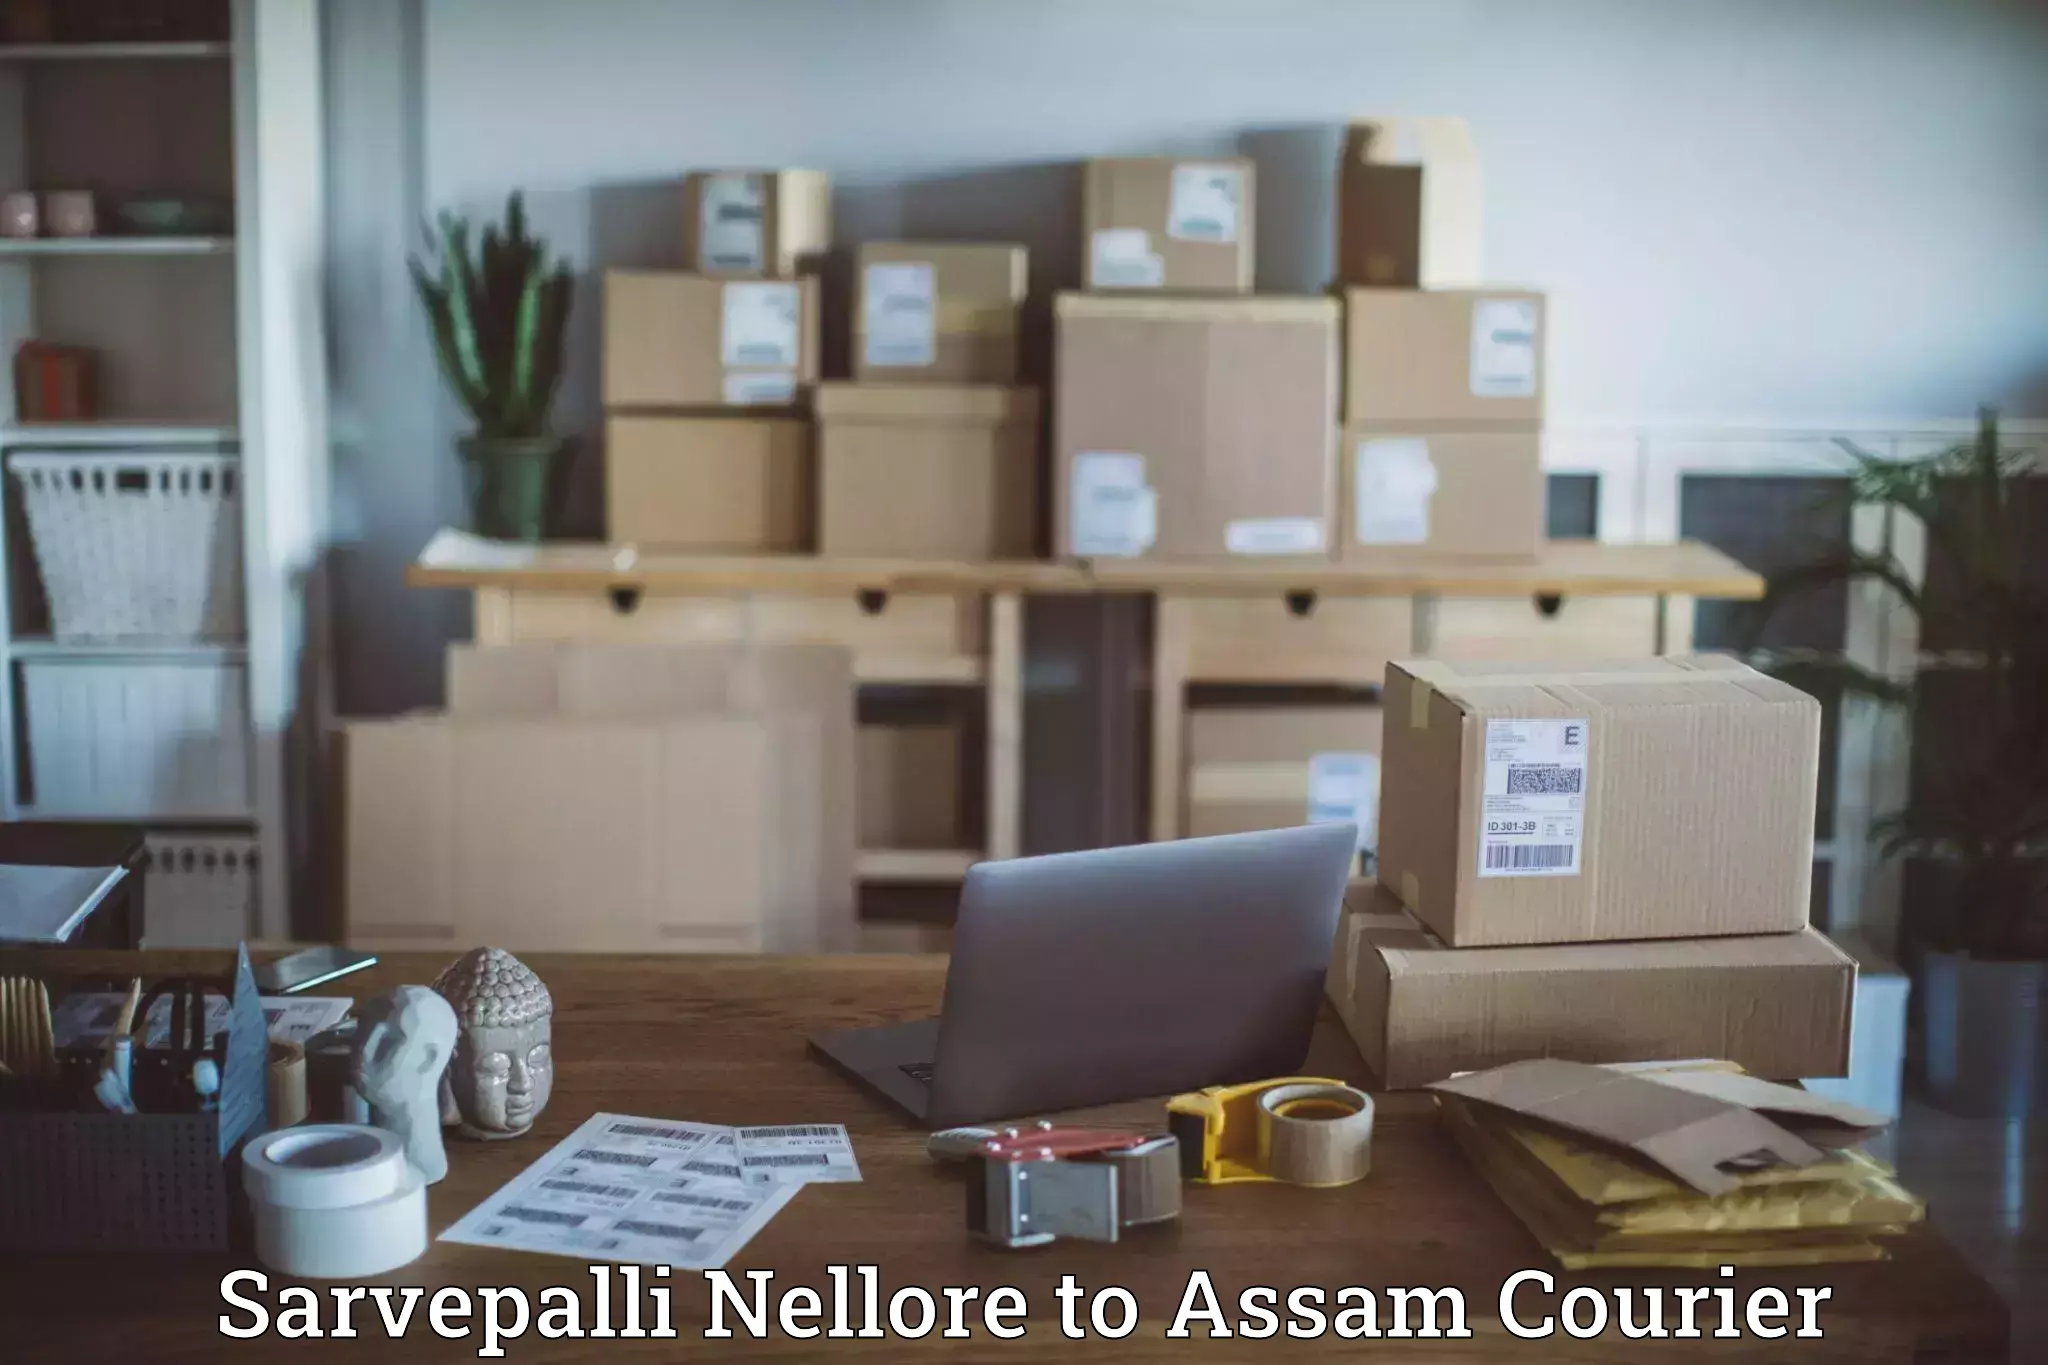 Domestic courier Sarvepalli Nellore to Paneri Kamrup